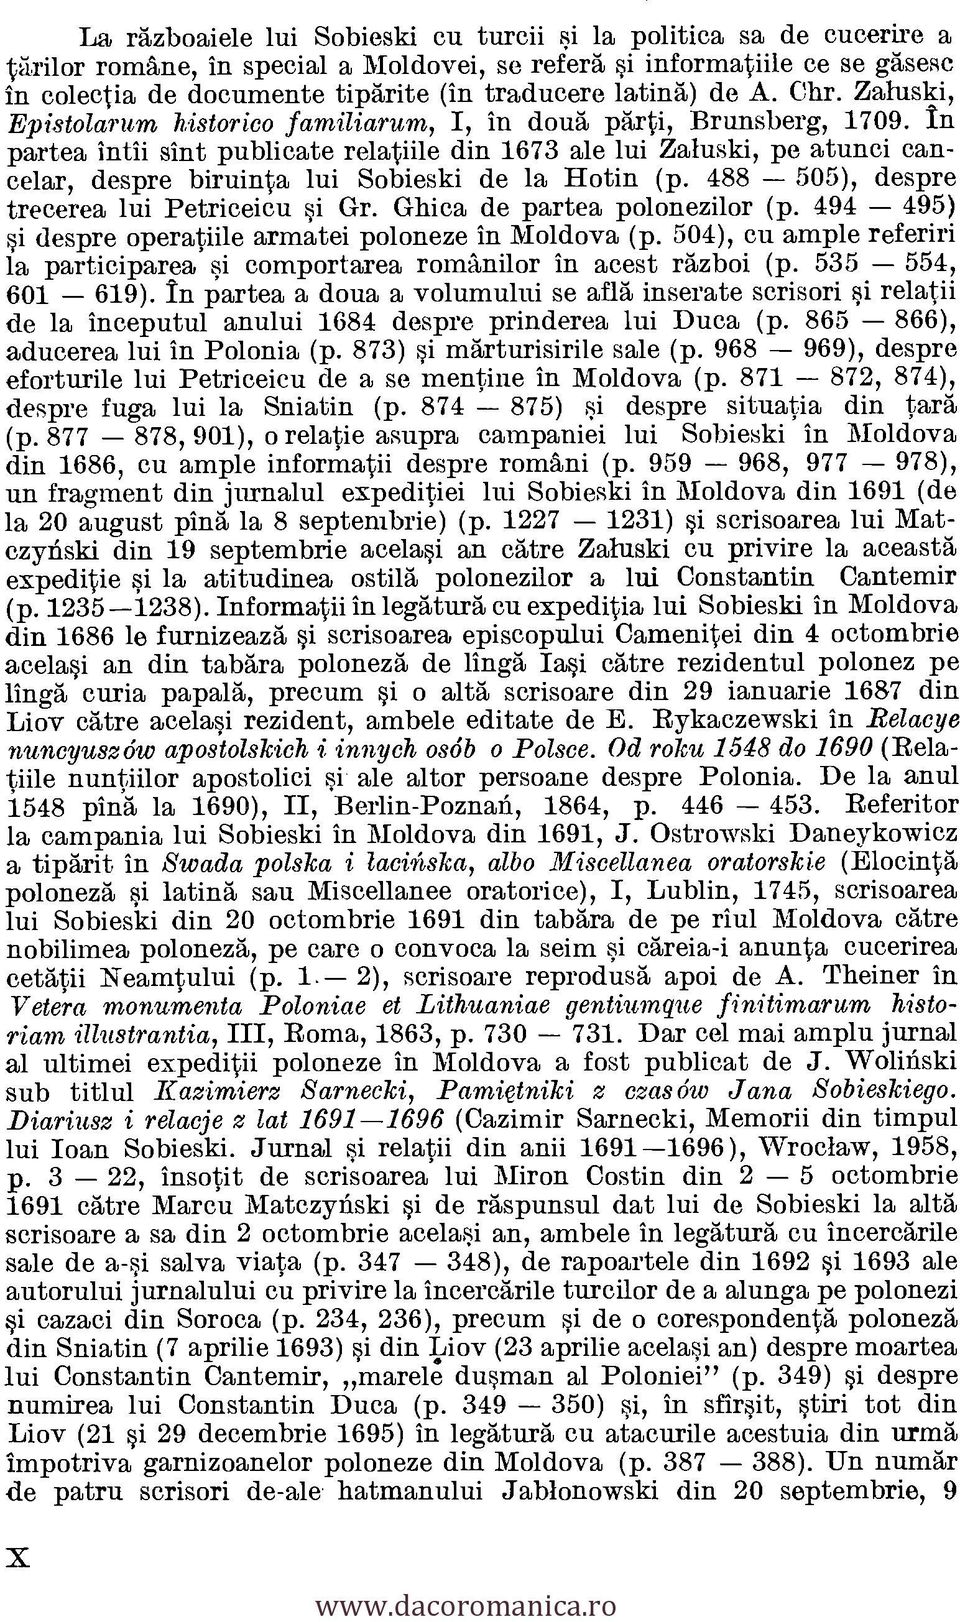 In partea intii sint publicate relatiile din 1673 ale lui Zaluski, pe atunci cancelar, despre biruinta lui Sobieski de la Hotin (p. 488 505), despre trecerea lui Petriceicu si Gr.